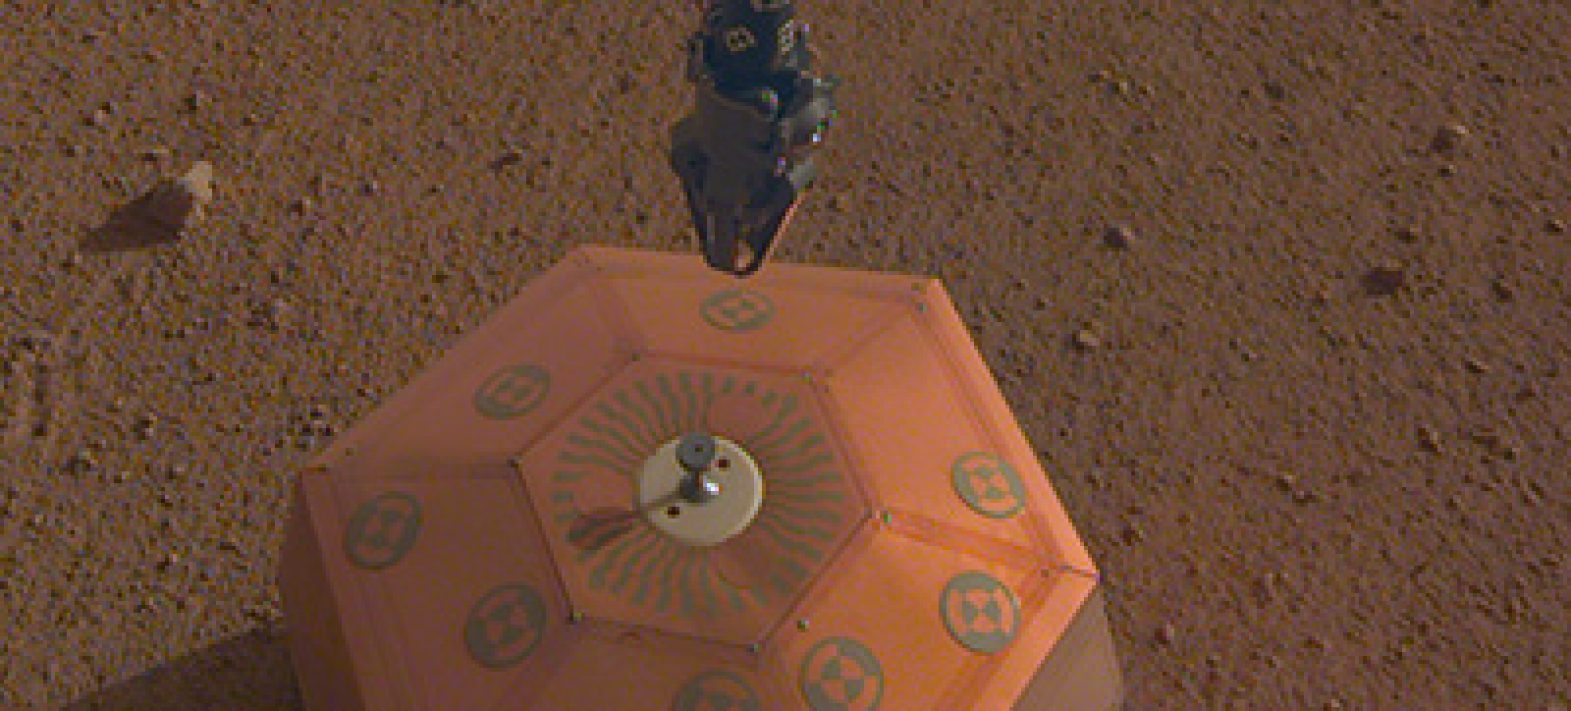 Le sismomètre SEIS est désormais posé sur Mars